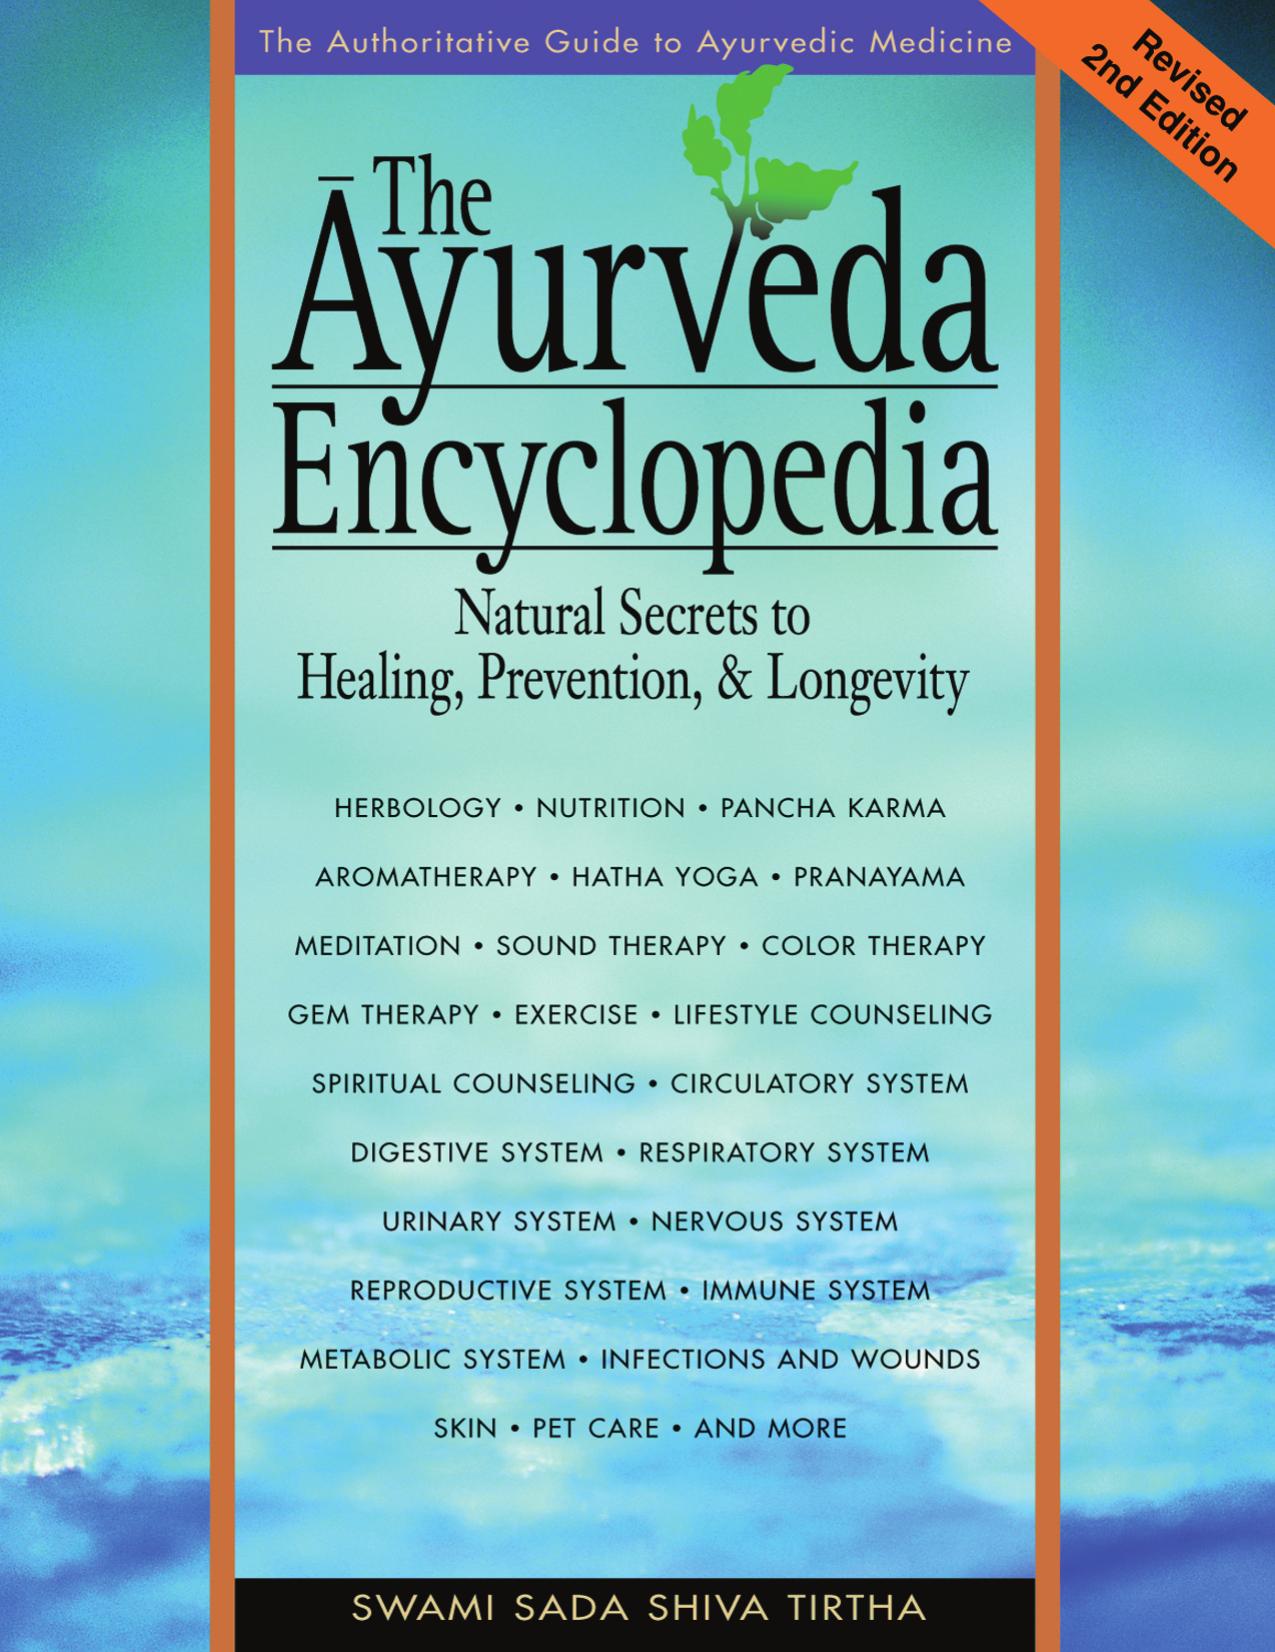 The Ayurveda Encyclopedia by Swami Sadashiva Tirtha